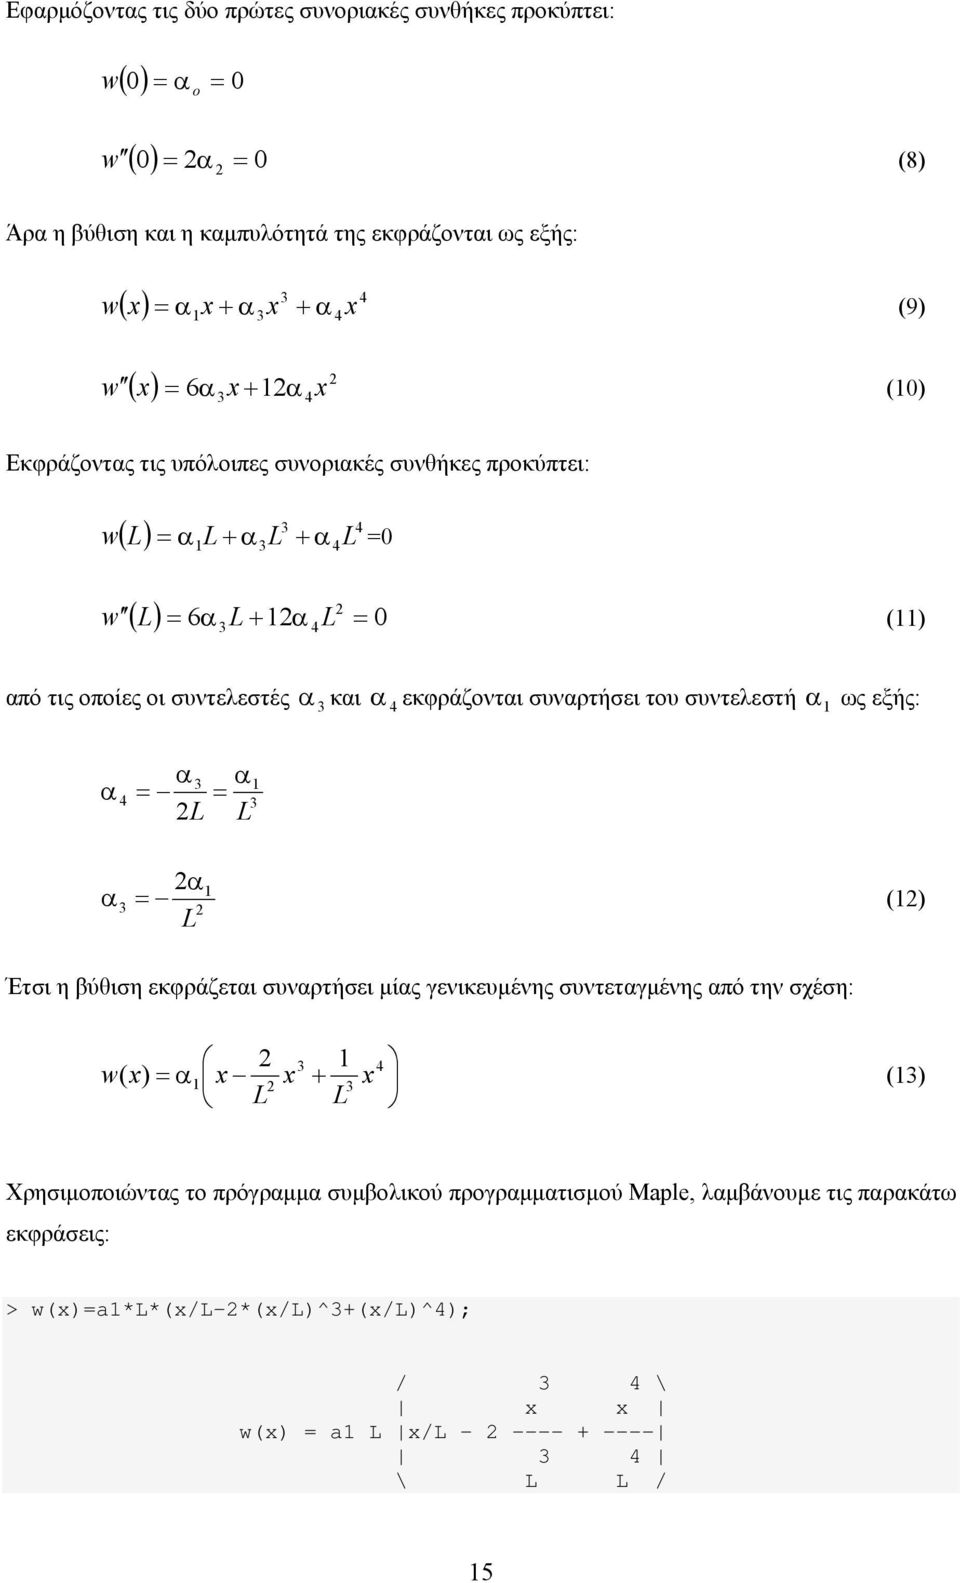 εκφράζονται συναρτήσει του συντελεστή ως εξής: α α α α α α () Έτσι η βύθιση εκφράζεται συναρτήσει μίας γενικευμένης συντεταγμένης από την σχέση: w ( x) α x x + x